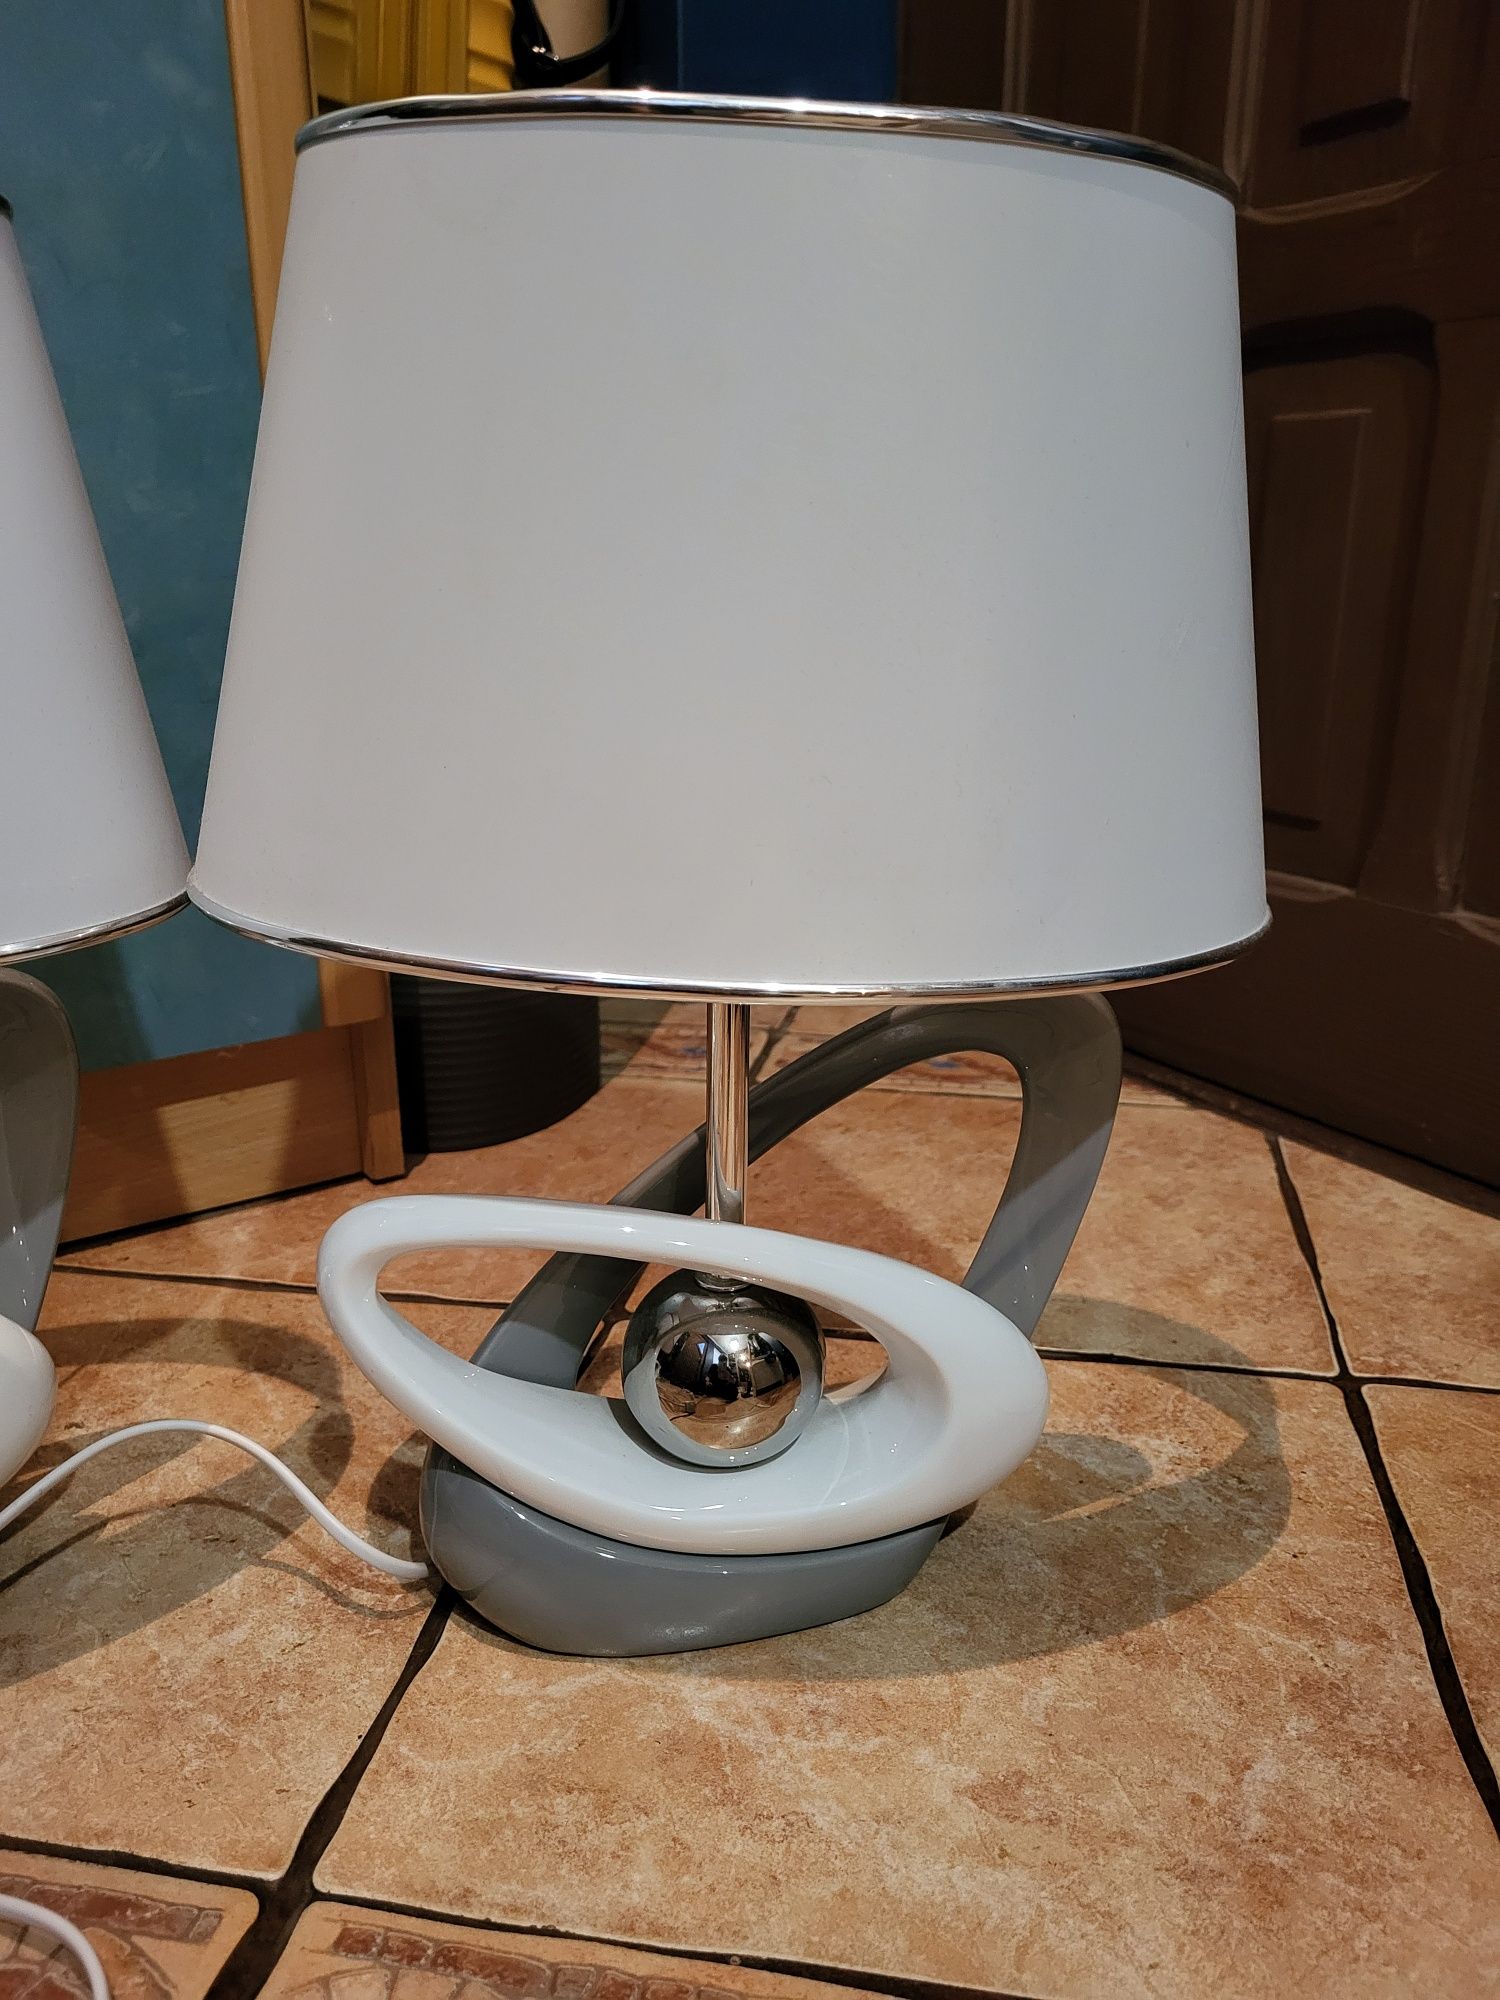 Lampy stołowe do sypialni Home&you